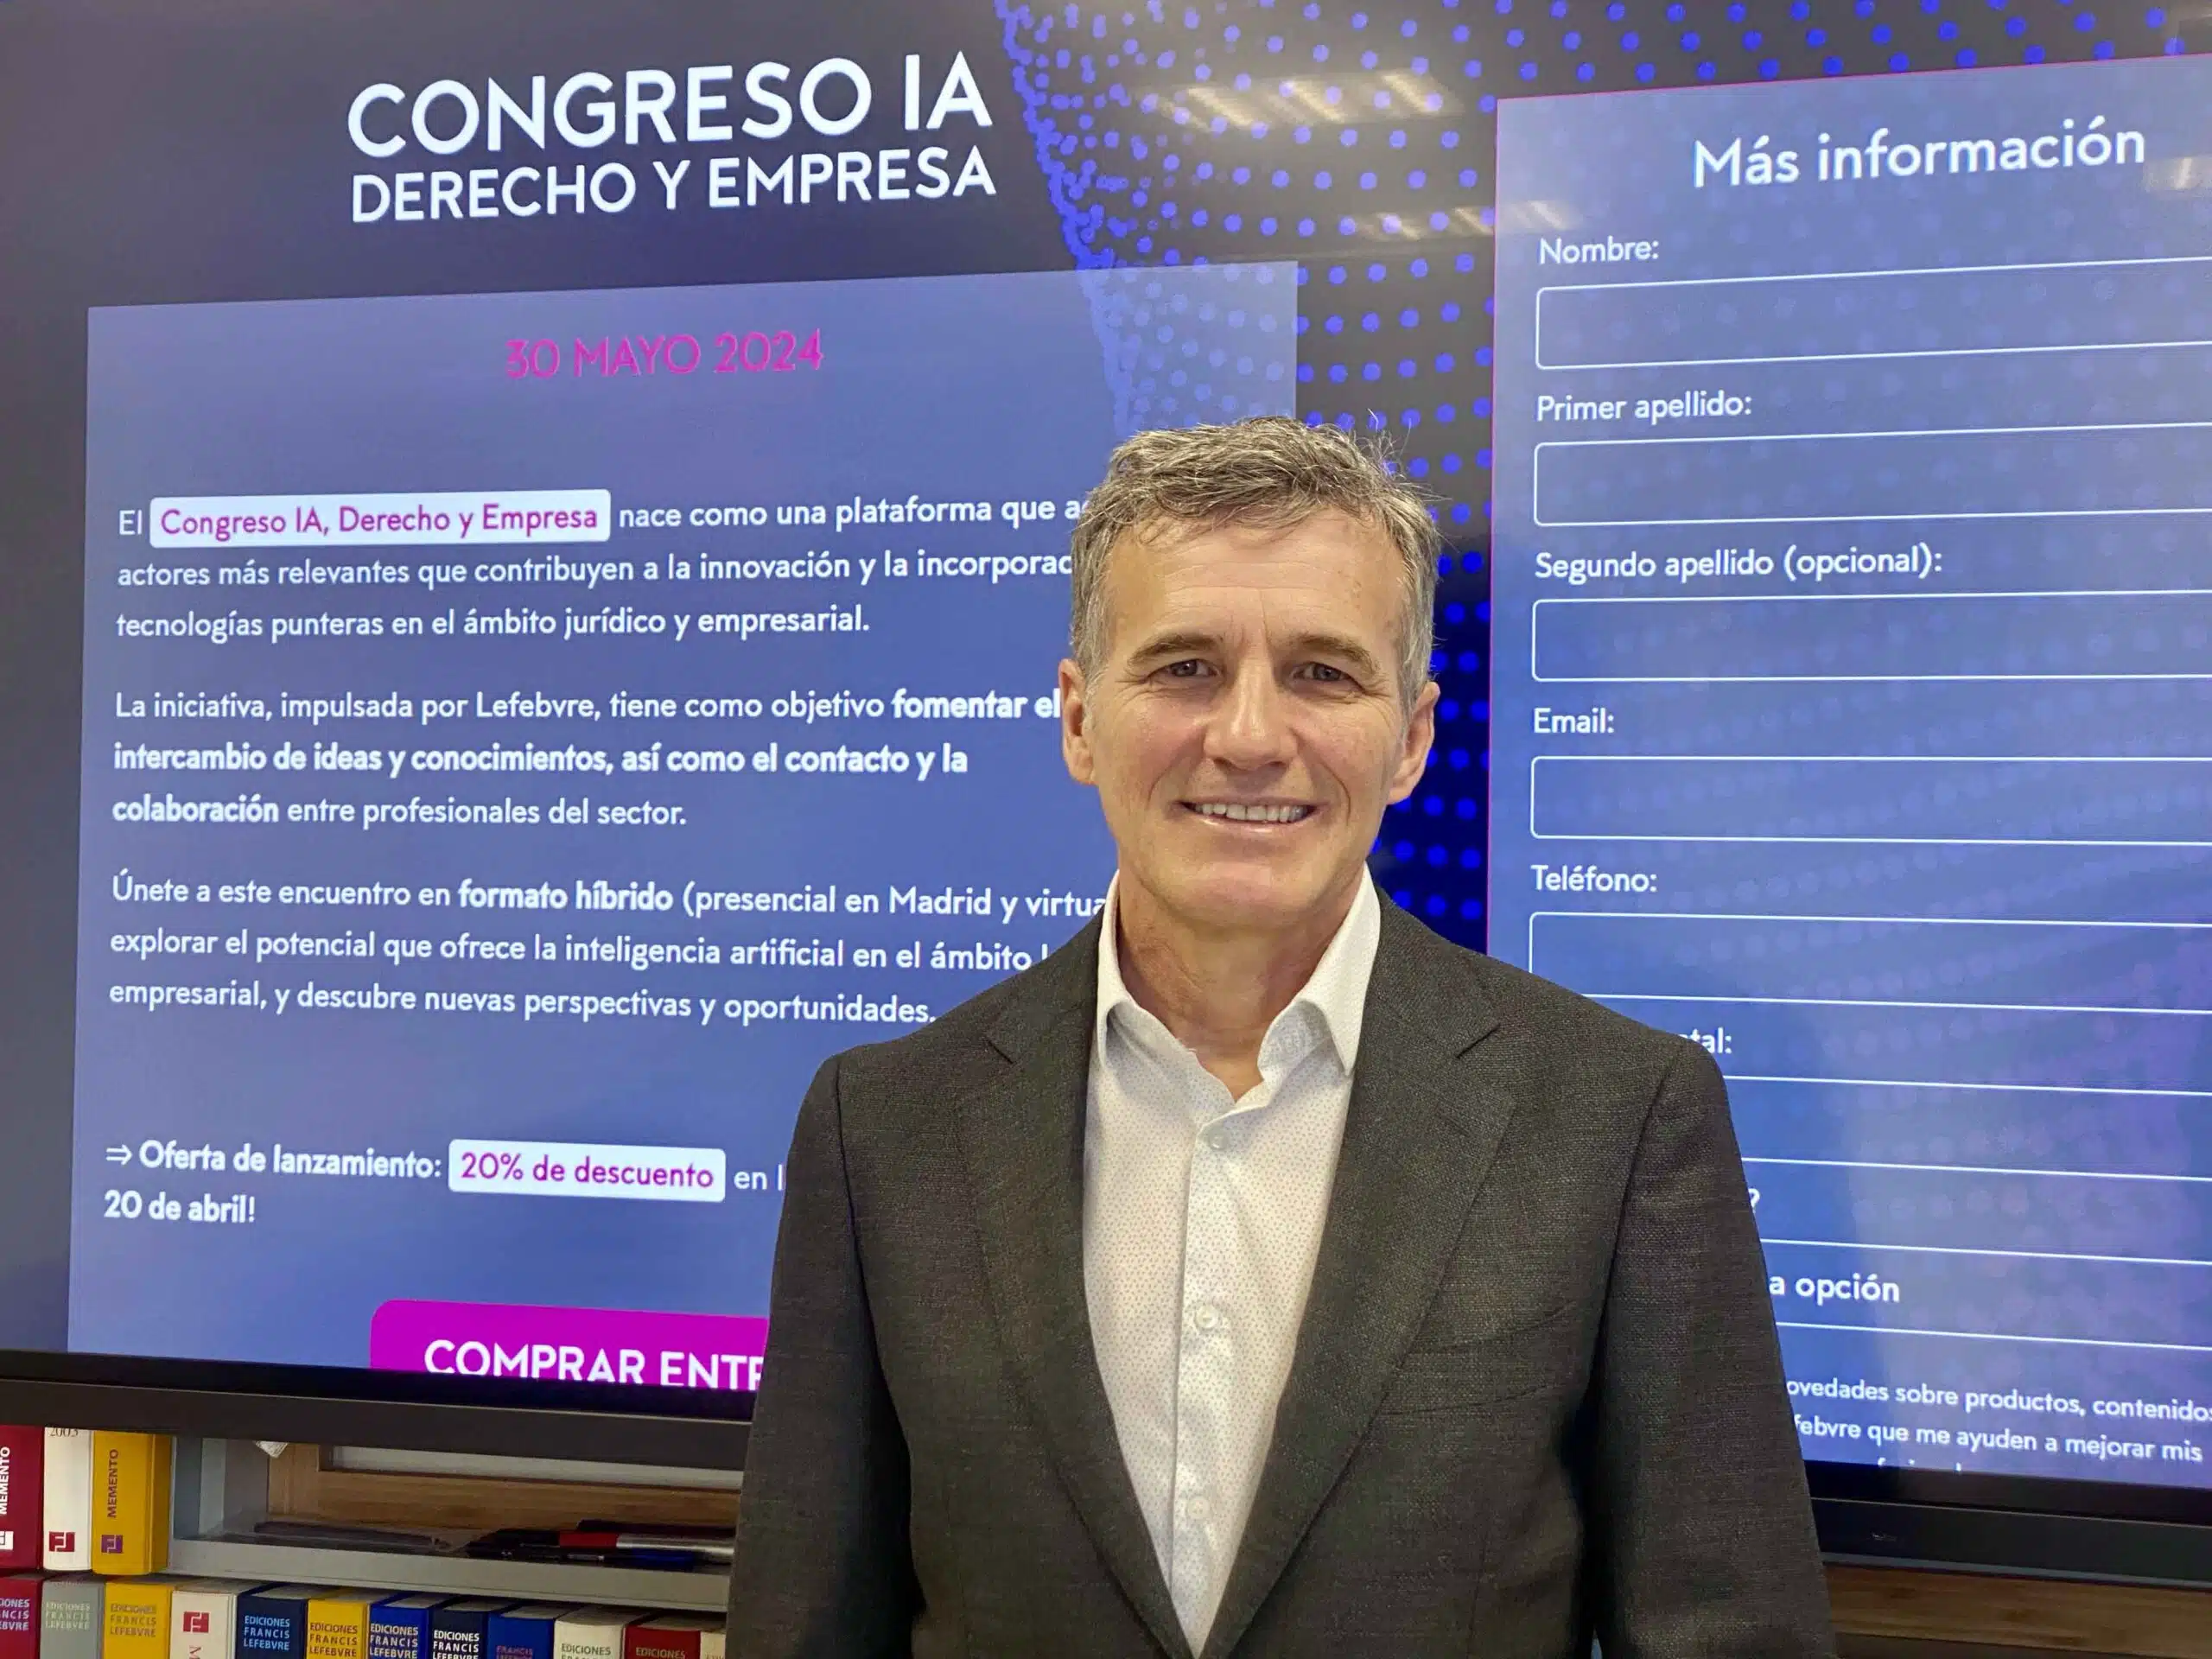 José Ángel Sandín, CEO de Lefebvre: “La IA aporta una eficiencia tan significativa que los profesionales no podrán prescindir de ella”